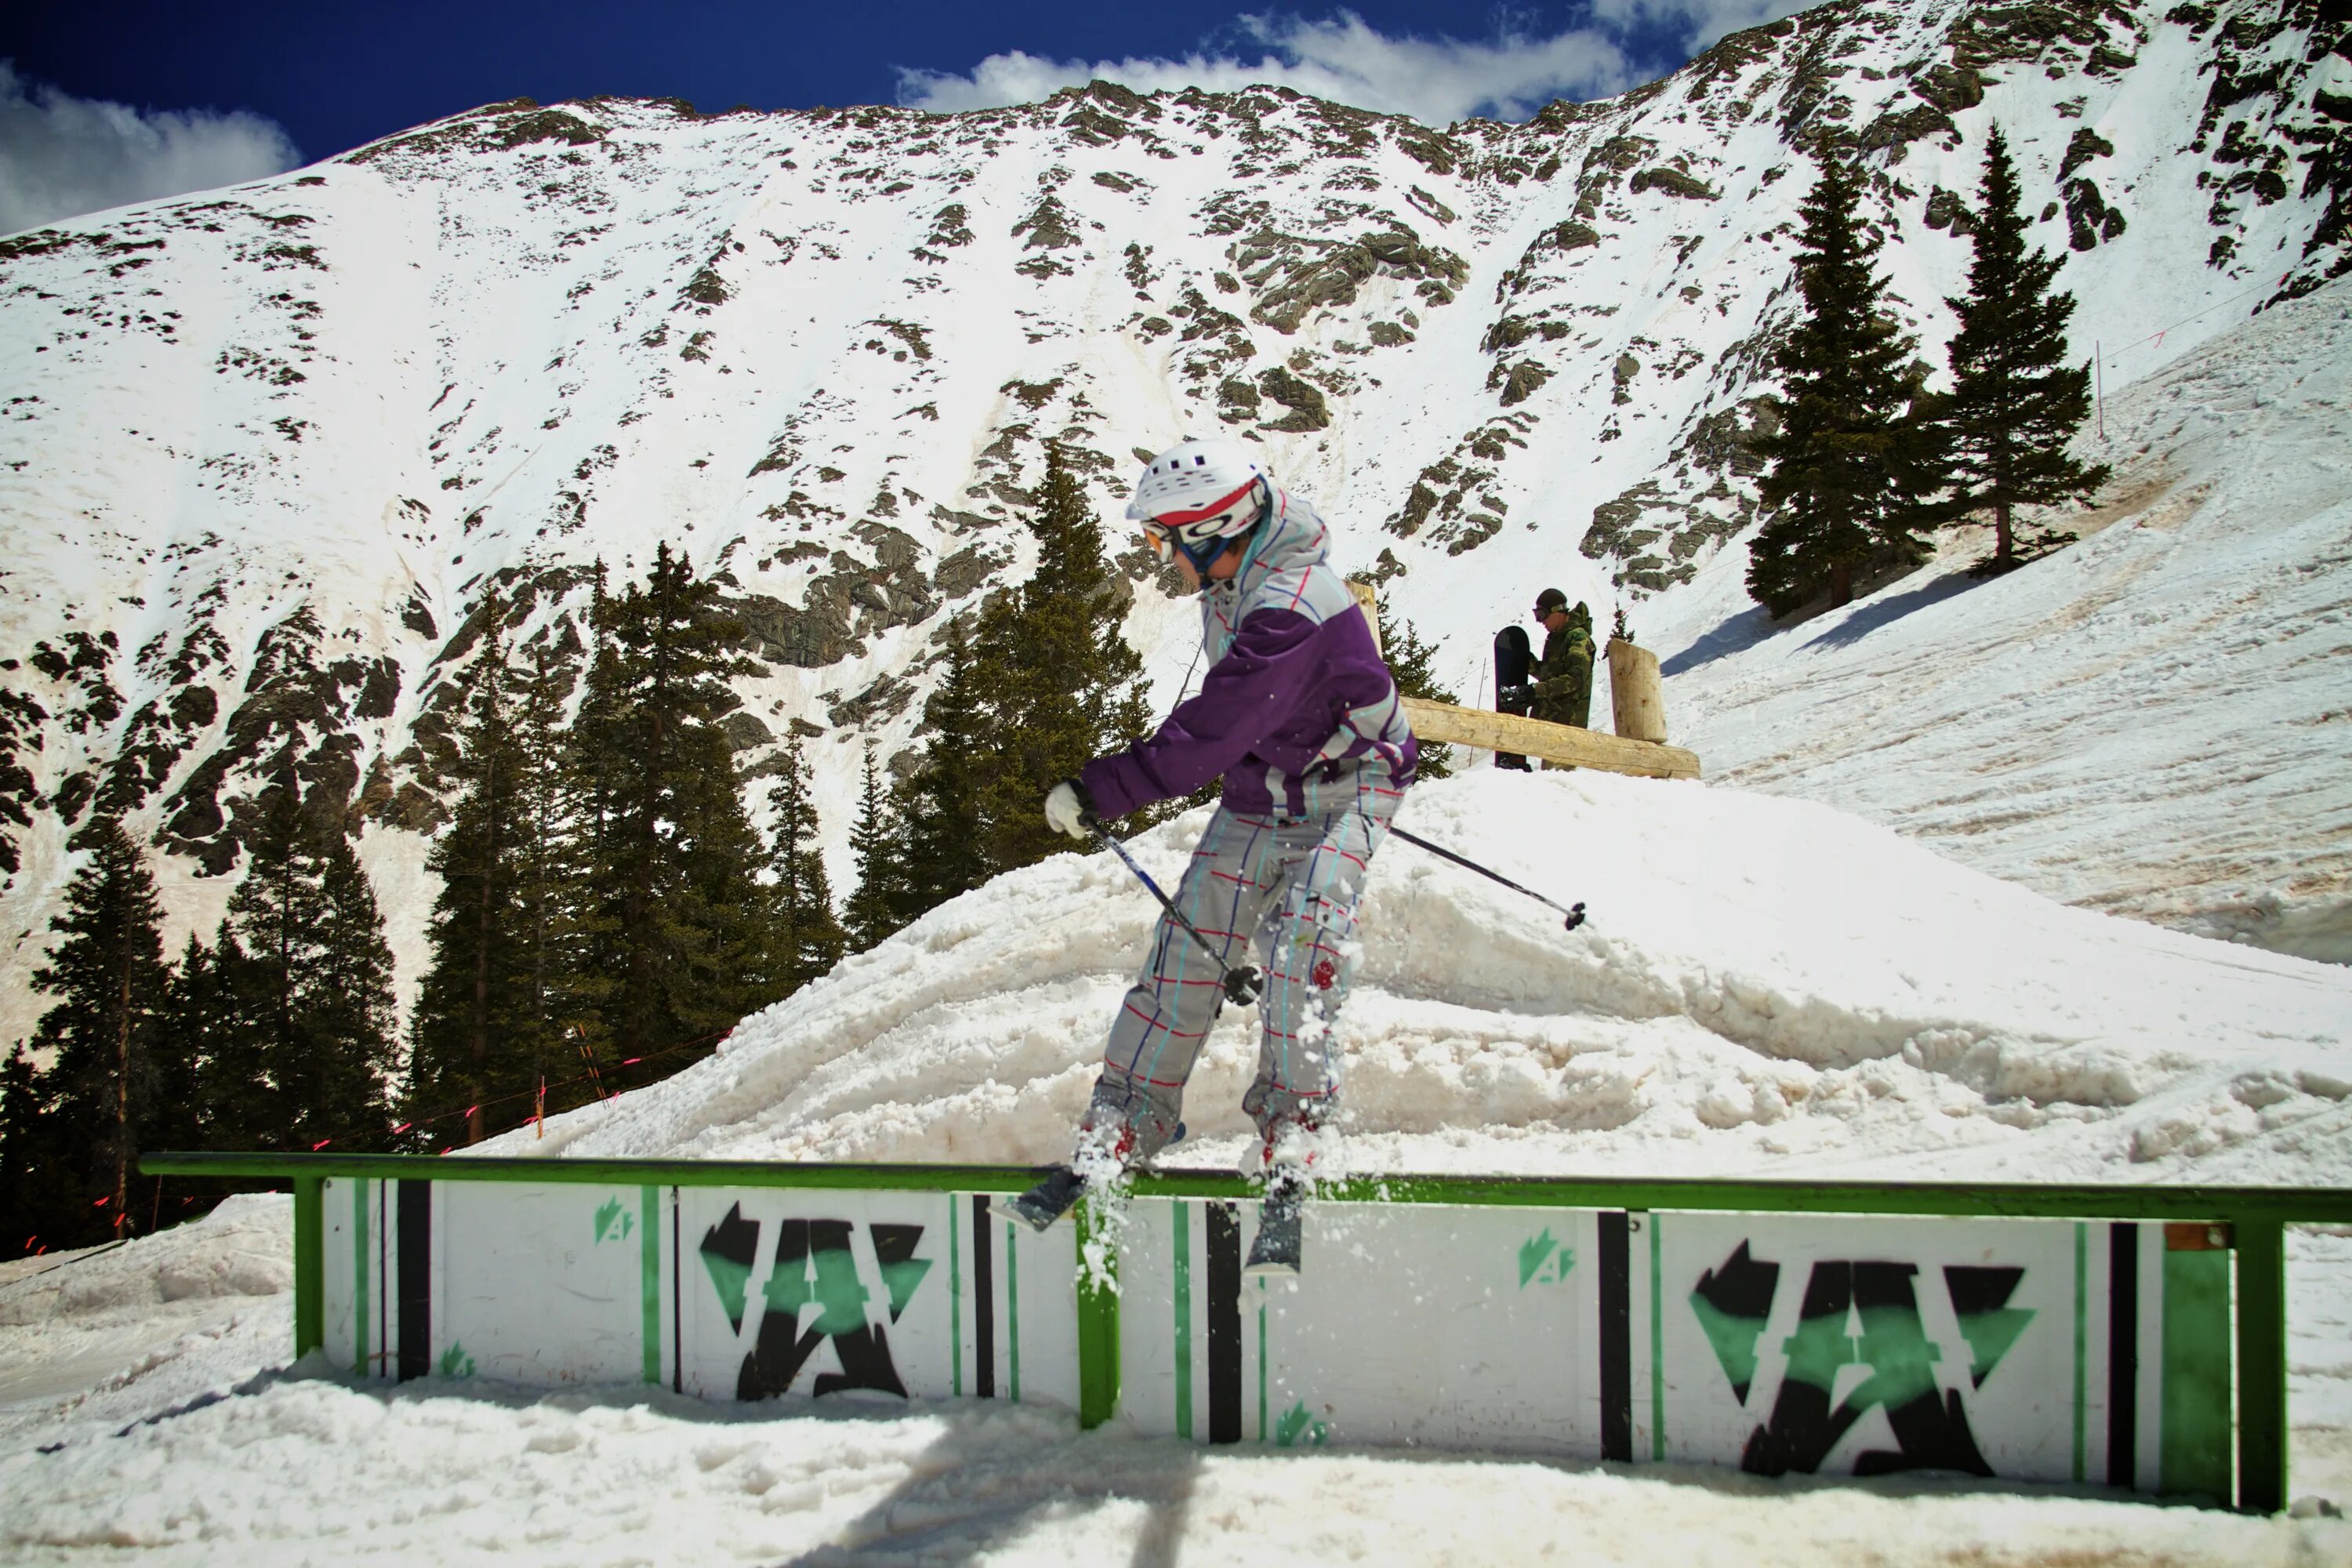 Ски время человека. Колорадо сноуборд. Горнолыжник в экстрим парке. Спорт экстрим Златоуст горнолыжный курорт. Ашатли парк горные лыжи сноуборд.